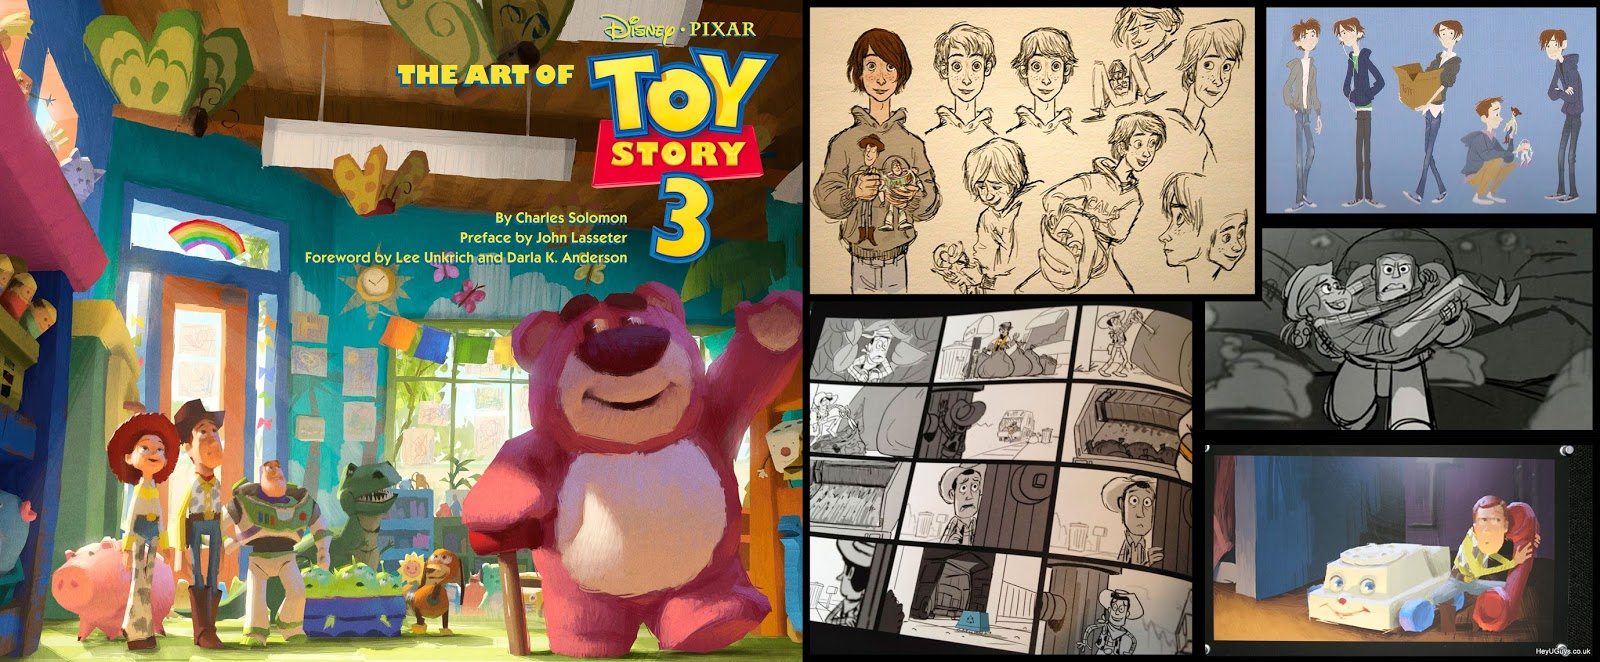 Libro El Arte de Toy Story 3 artbook - Concept Art, Diseño de Personajes y Making of